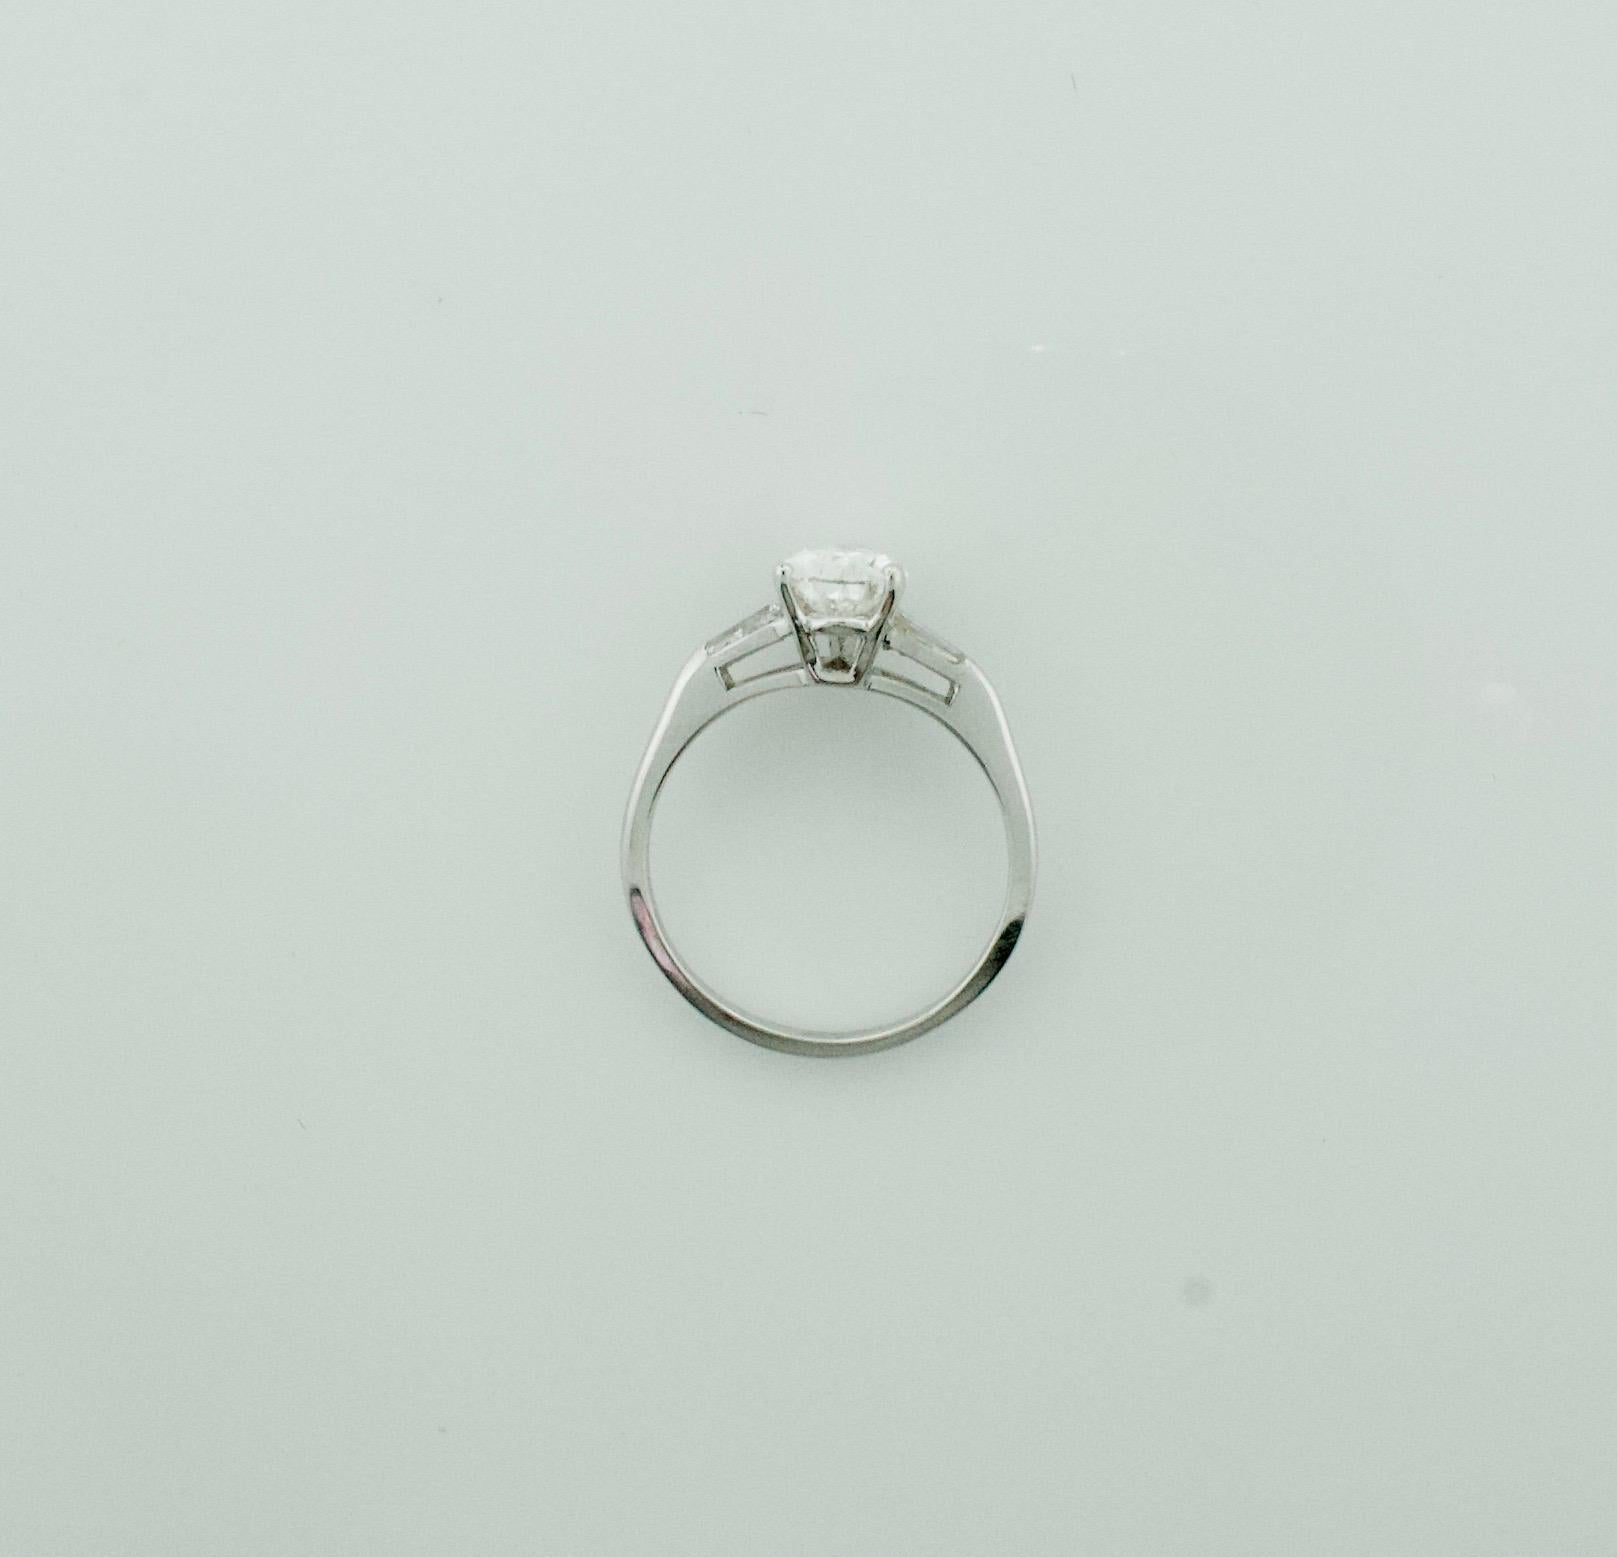 Der klassische birnenförmige Diamantring aus Platin 1,16 GIA F SI1
Ein birnenförmiger Diamant mit einem Gewicht von 1,16  GIA zertifiziert F- SI1
Zwei zusammenpassende spitz zulaufende Baguette mit einem Gewicht von ca. 10 Karat   
Dieses klassische